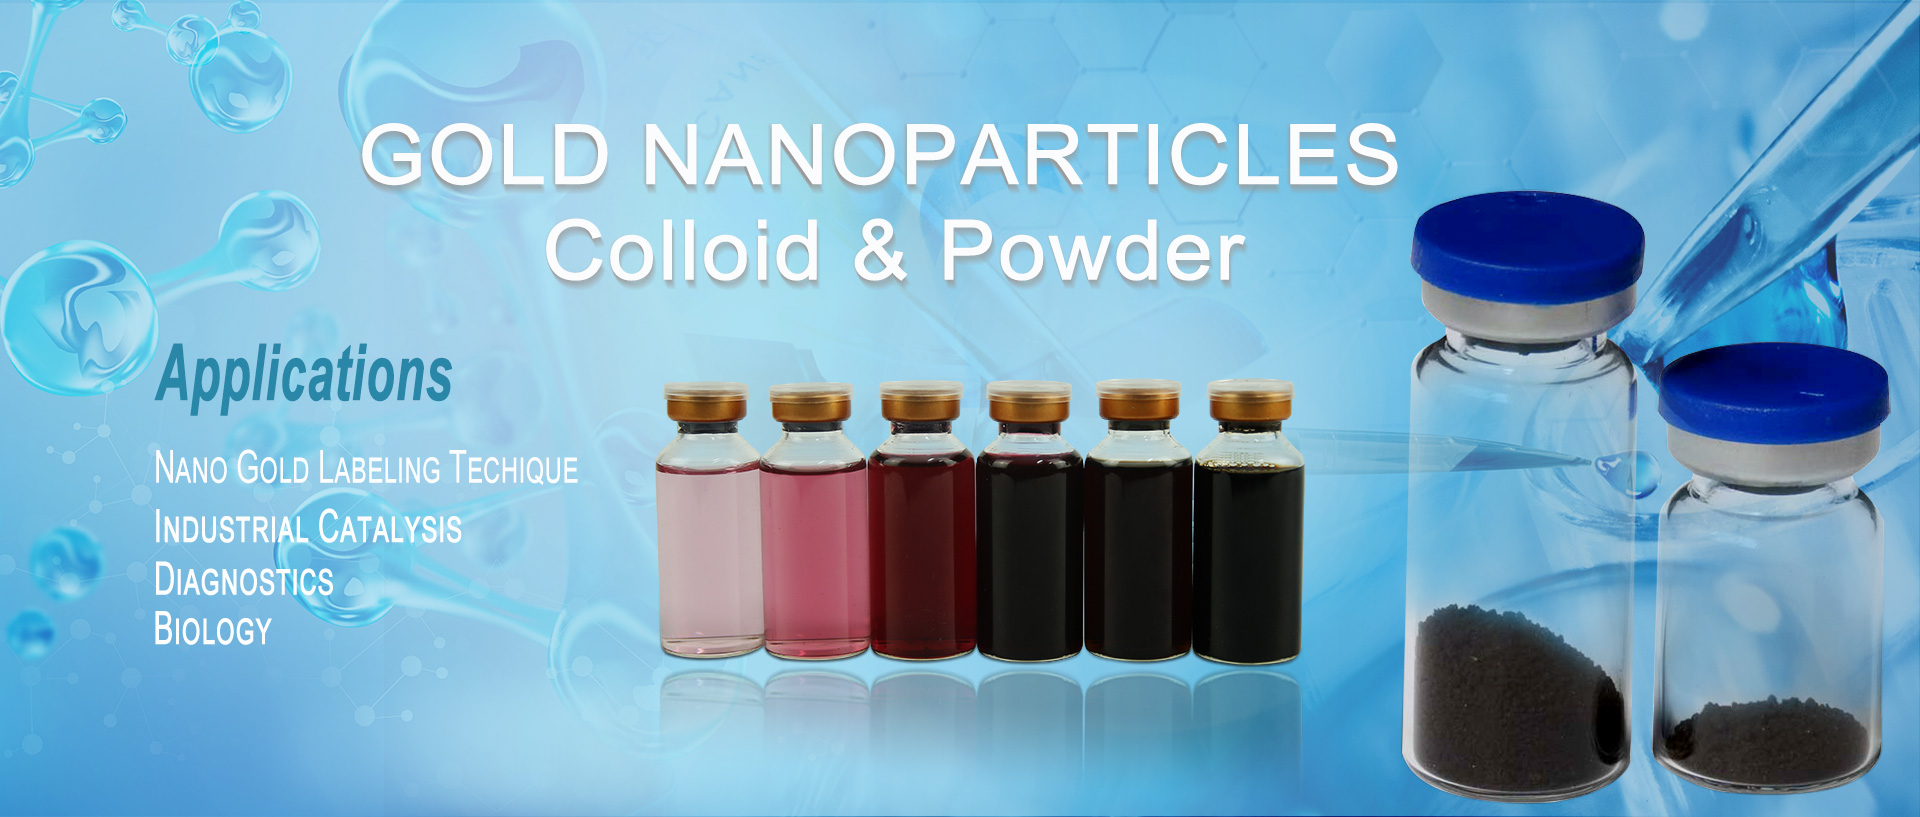 nanoparticles òir